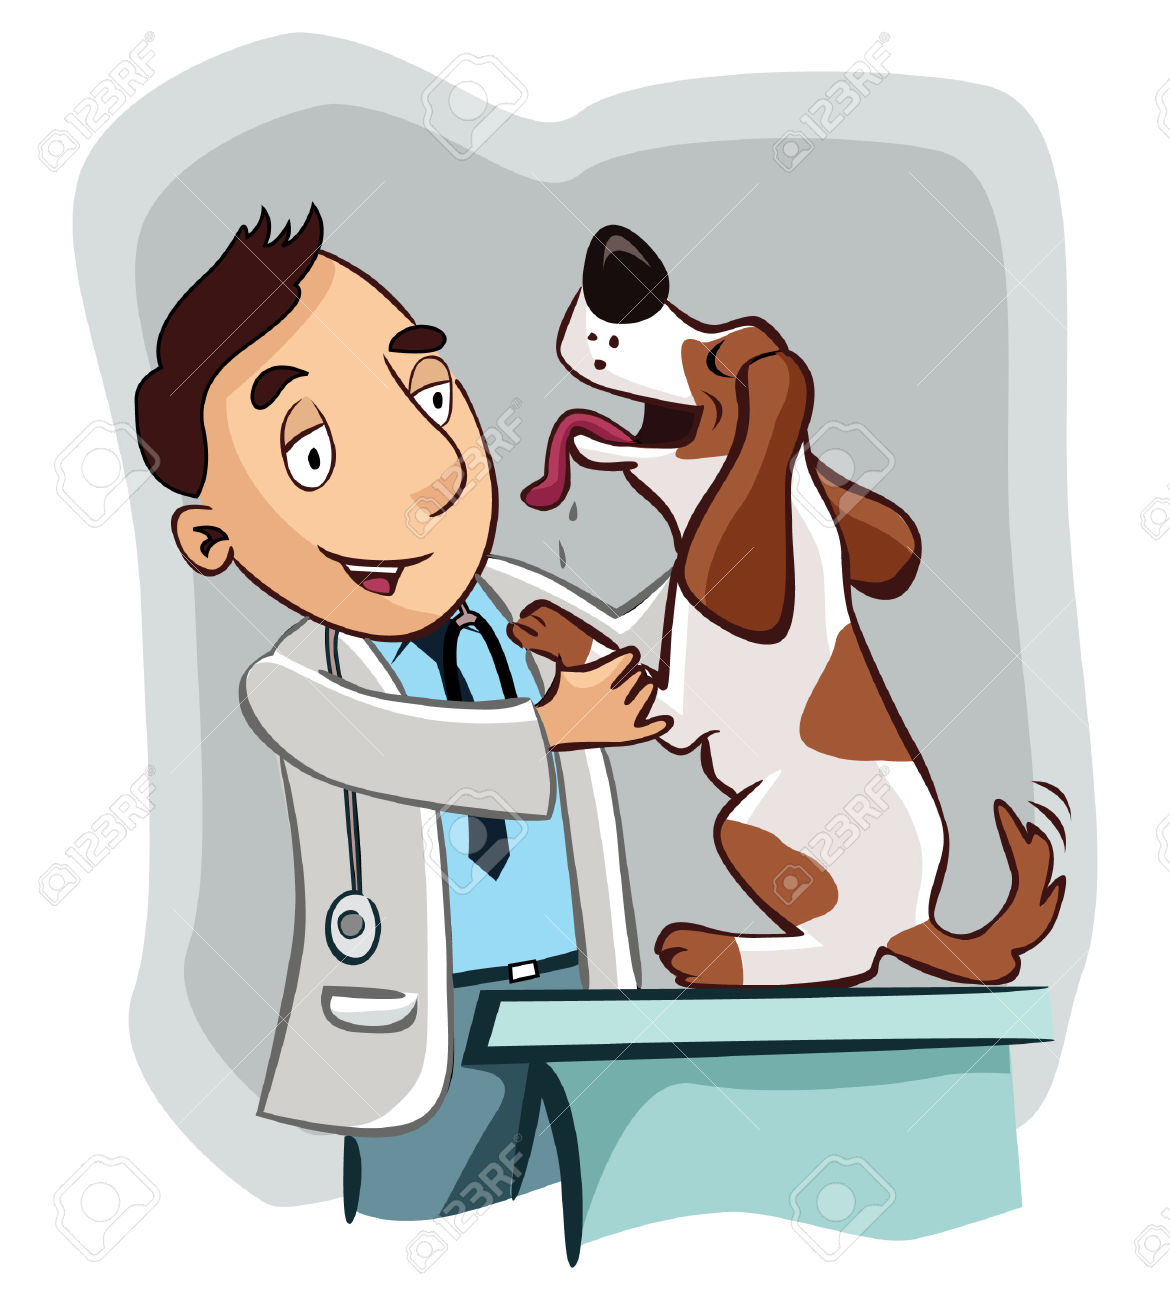 free veterinary logo clipart - photo #24